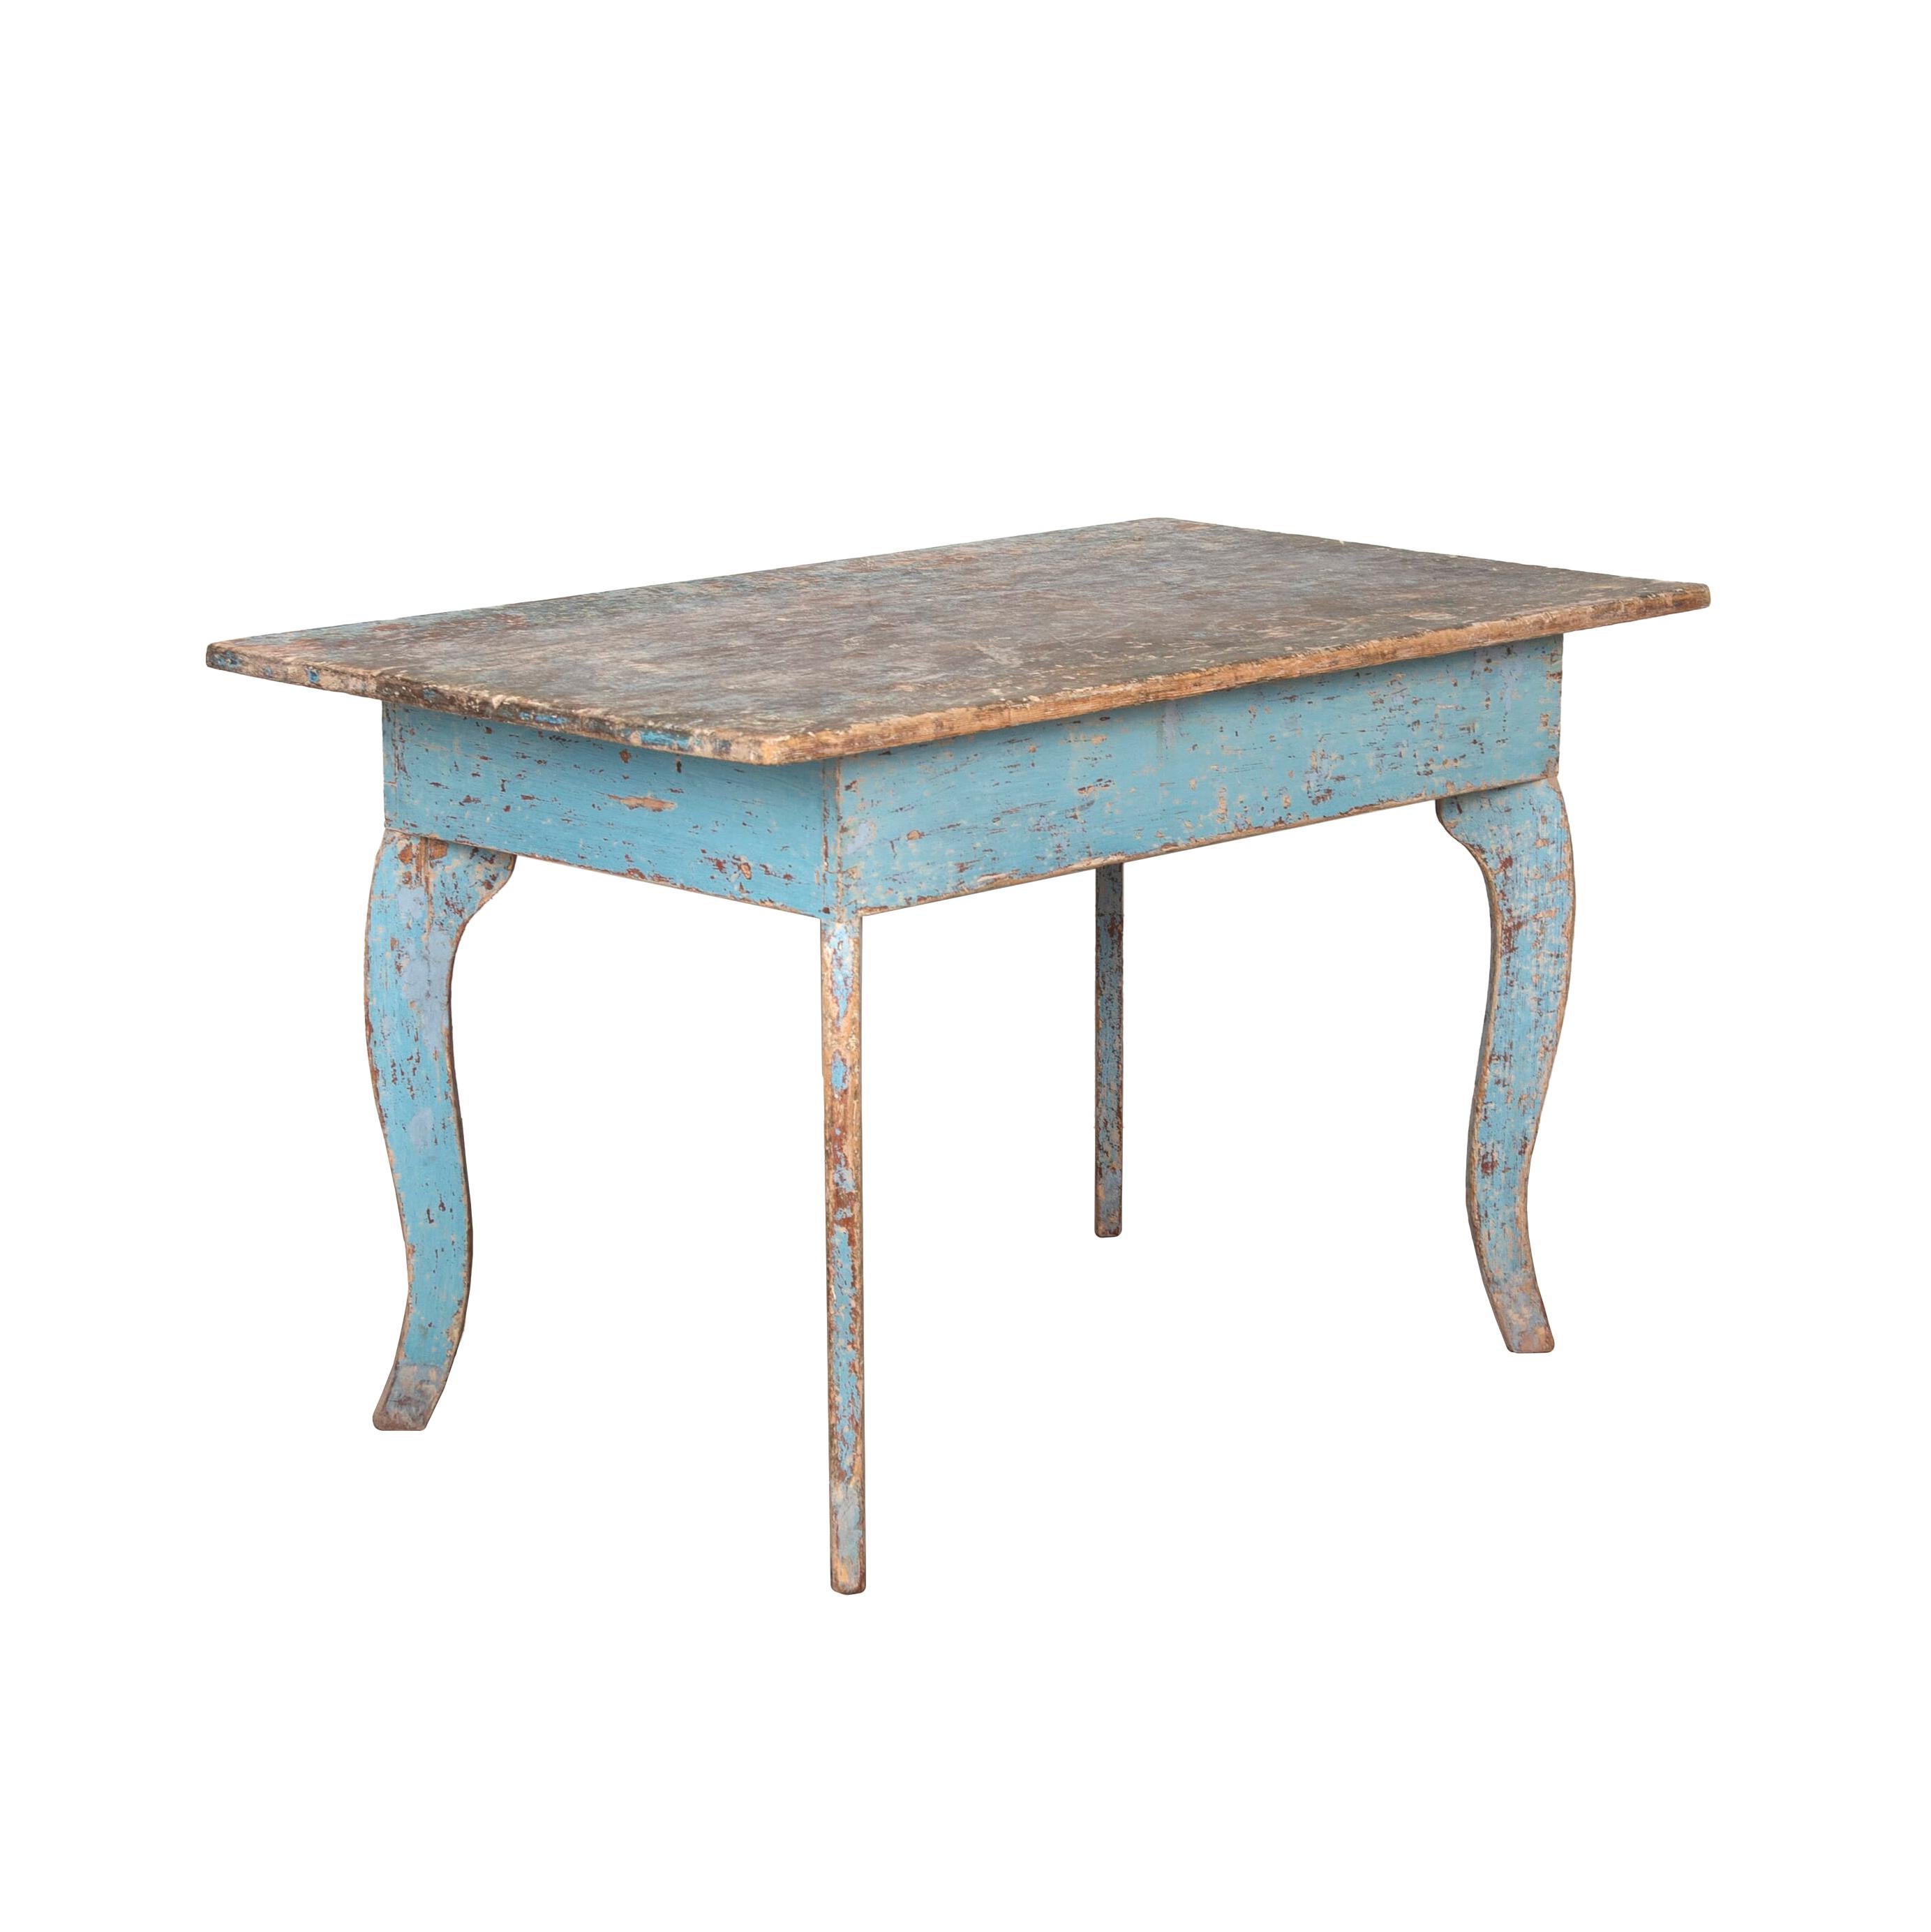 Charmanter schwedischer Provinztisch aus dem 19. Jahrhundert. 
Mit einer einfachen flachen Platte und auf geschwungenen Cabriole-Beinen stehend. 
Es wurde zu einer sekundären blauen Patina gekratzt.
 